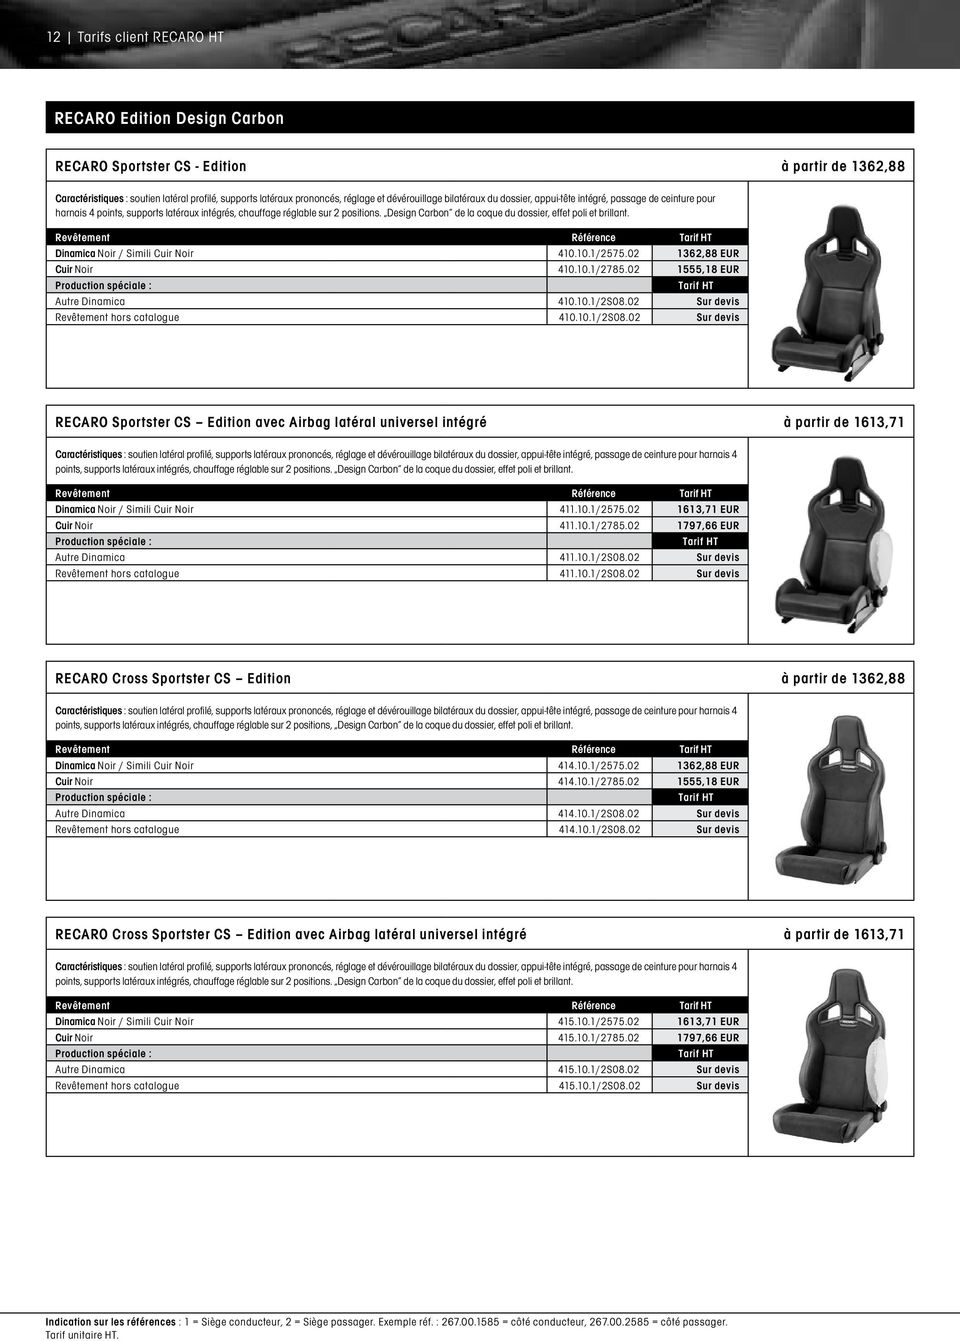 Design Carbon de la coque du dossier, effet poli et brillant. Dinamica Noir / Simili Cuir Noir 410.10.1/2575.02 1362,88 EUR Cuir Noir 410.10.1/2785.02 1555,18 EUR Autre Dinamica 410.10.1/2S08.